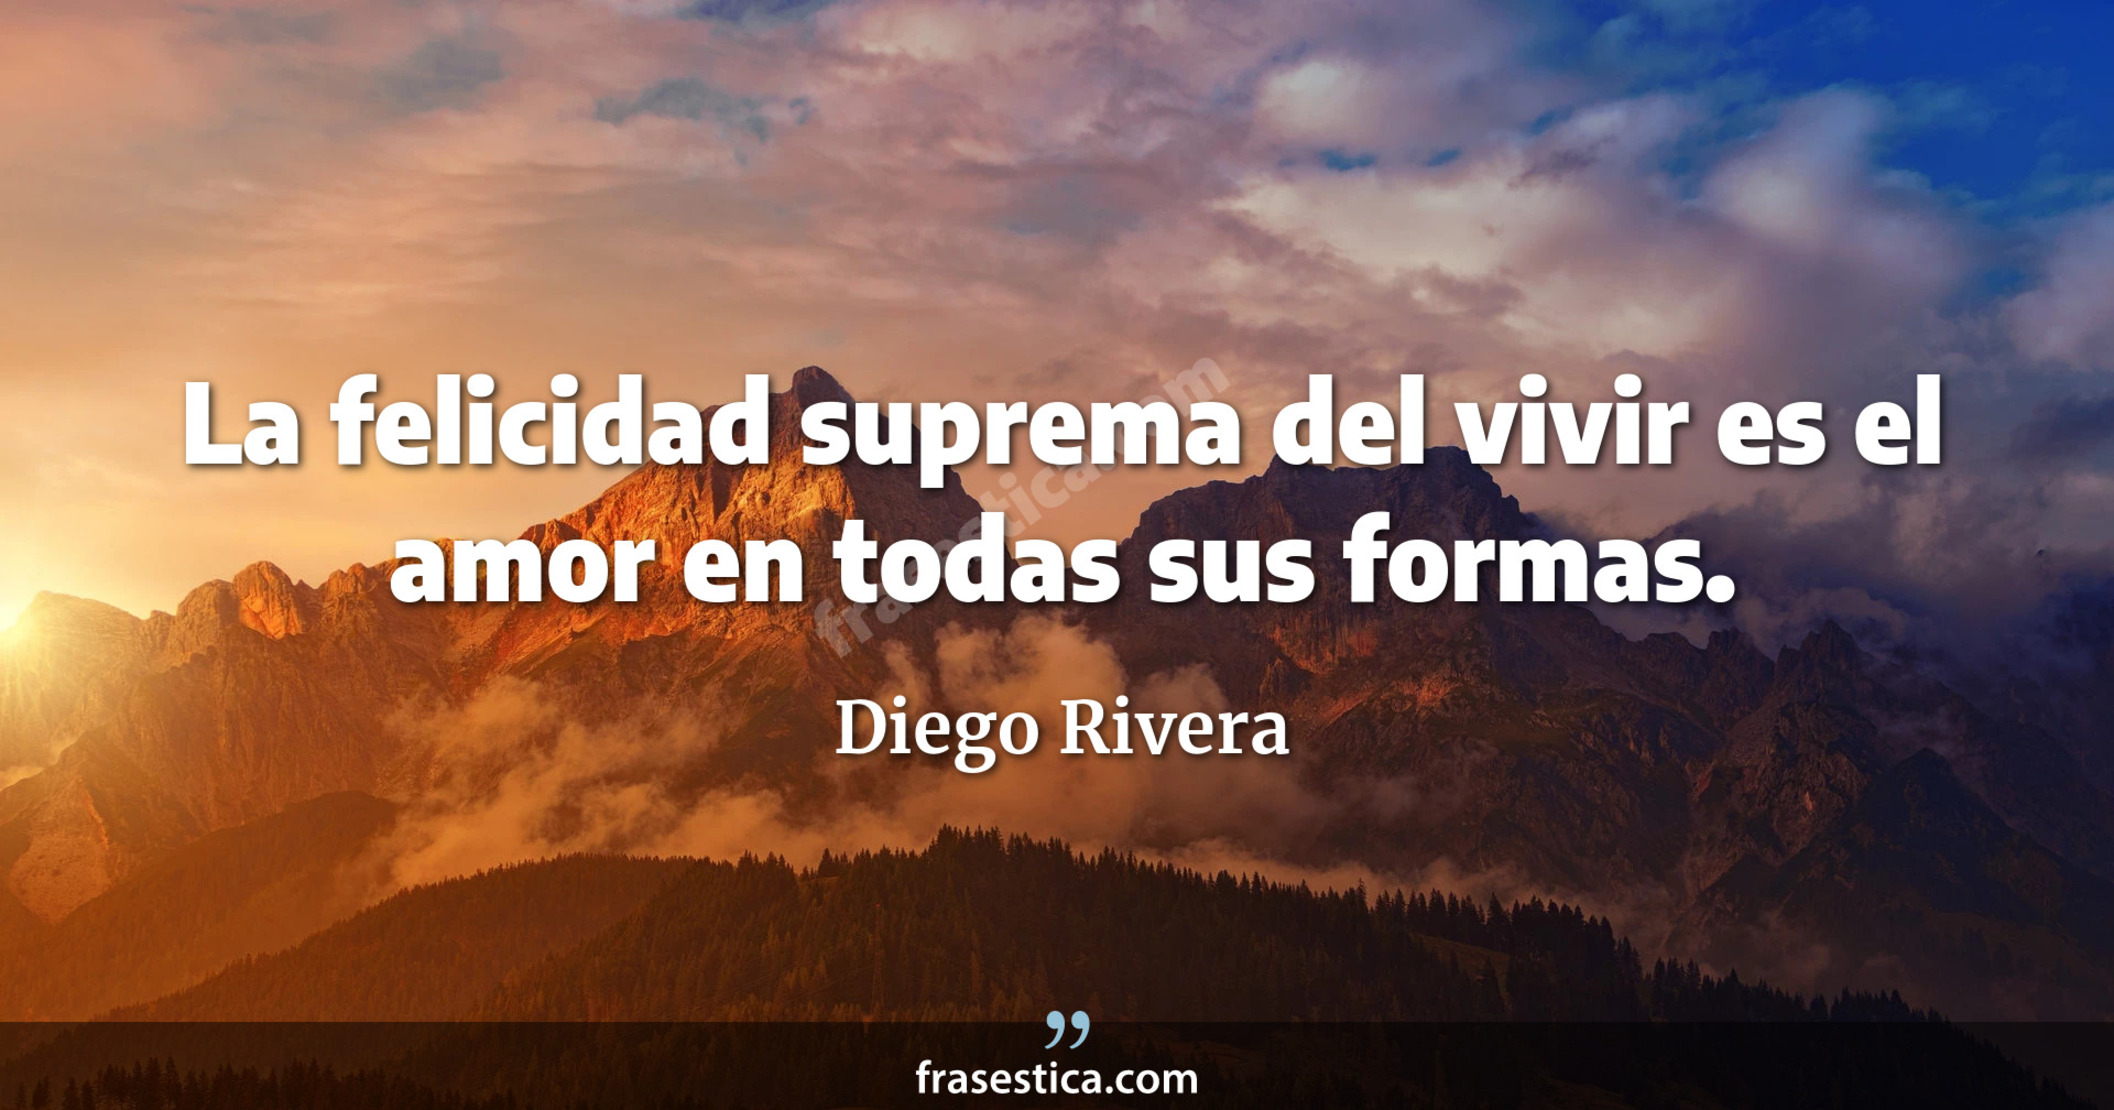 La felicidad suprema del vivir es el amor en todas sus formas. - Diego Rivera